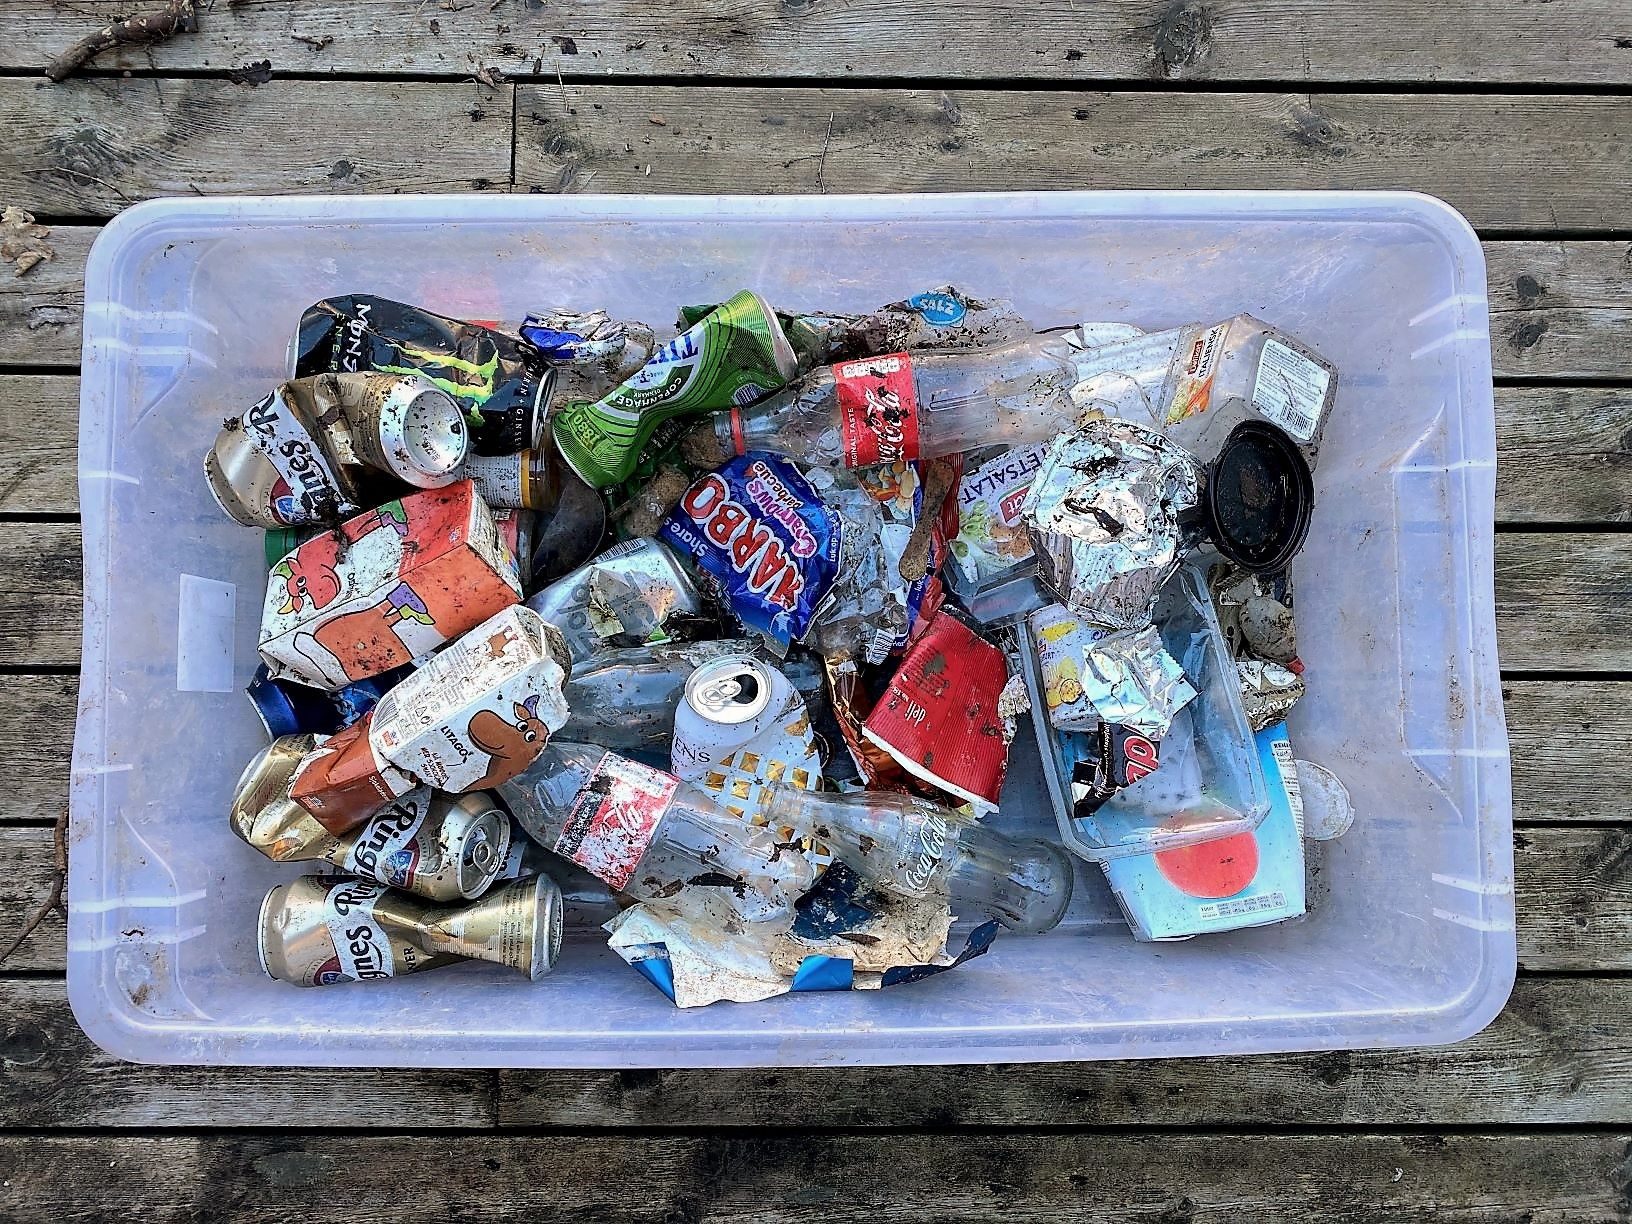 søppel blir plast i havet, kasse med plast og flasker